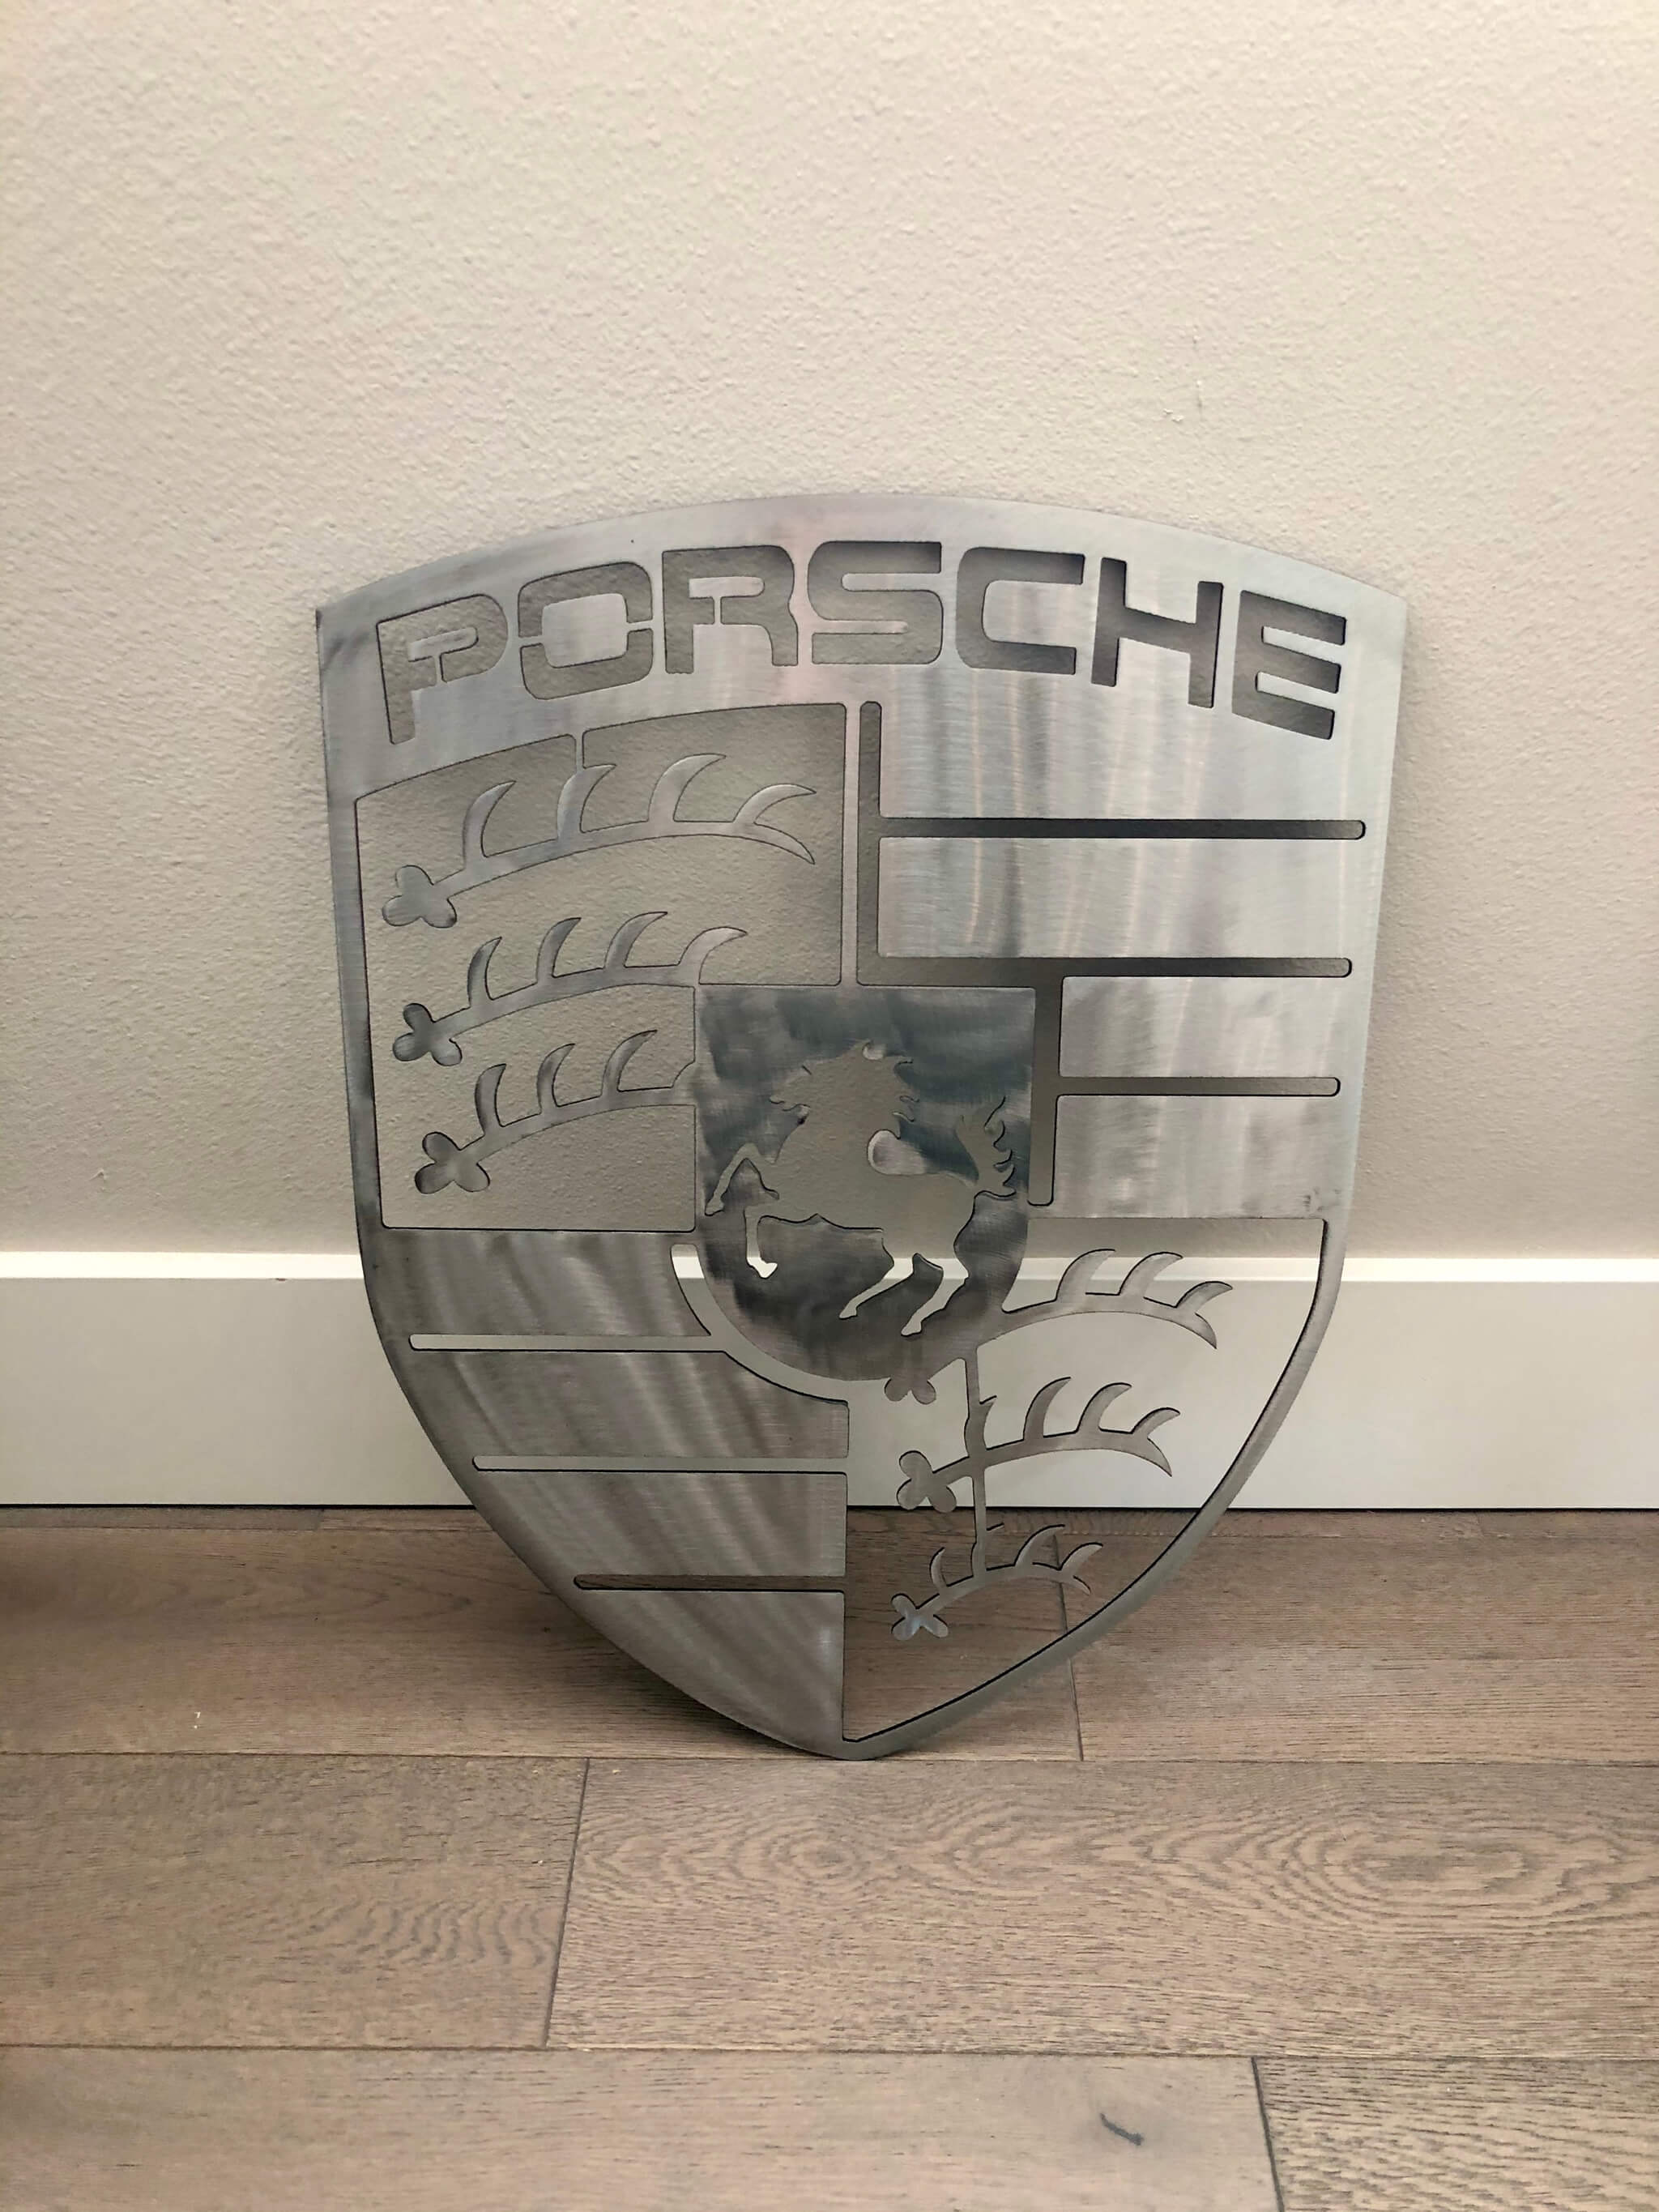 NO RESERVE - Stainless Steel Porsche Crest (20" x 15")